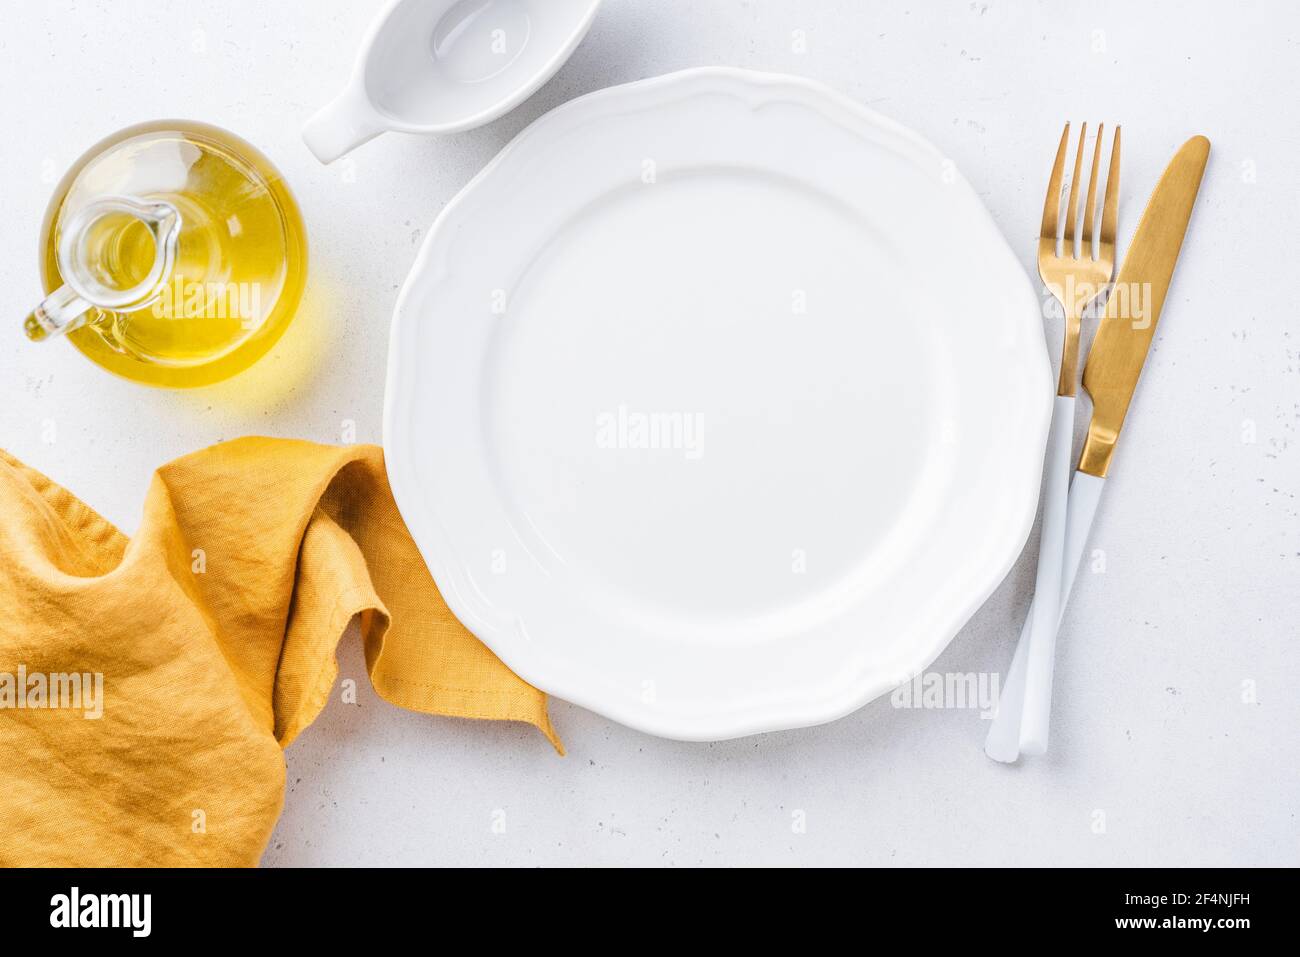 Piatto bianco vuoto, biancheria da tavola gialla e posate dorate. Elegante impostazione della tabella con spazio di copia per testo o disegno Foto Stock